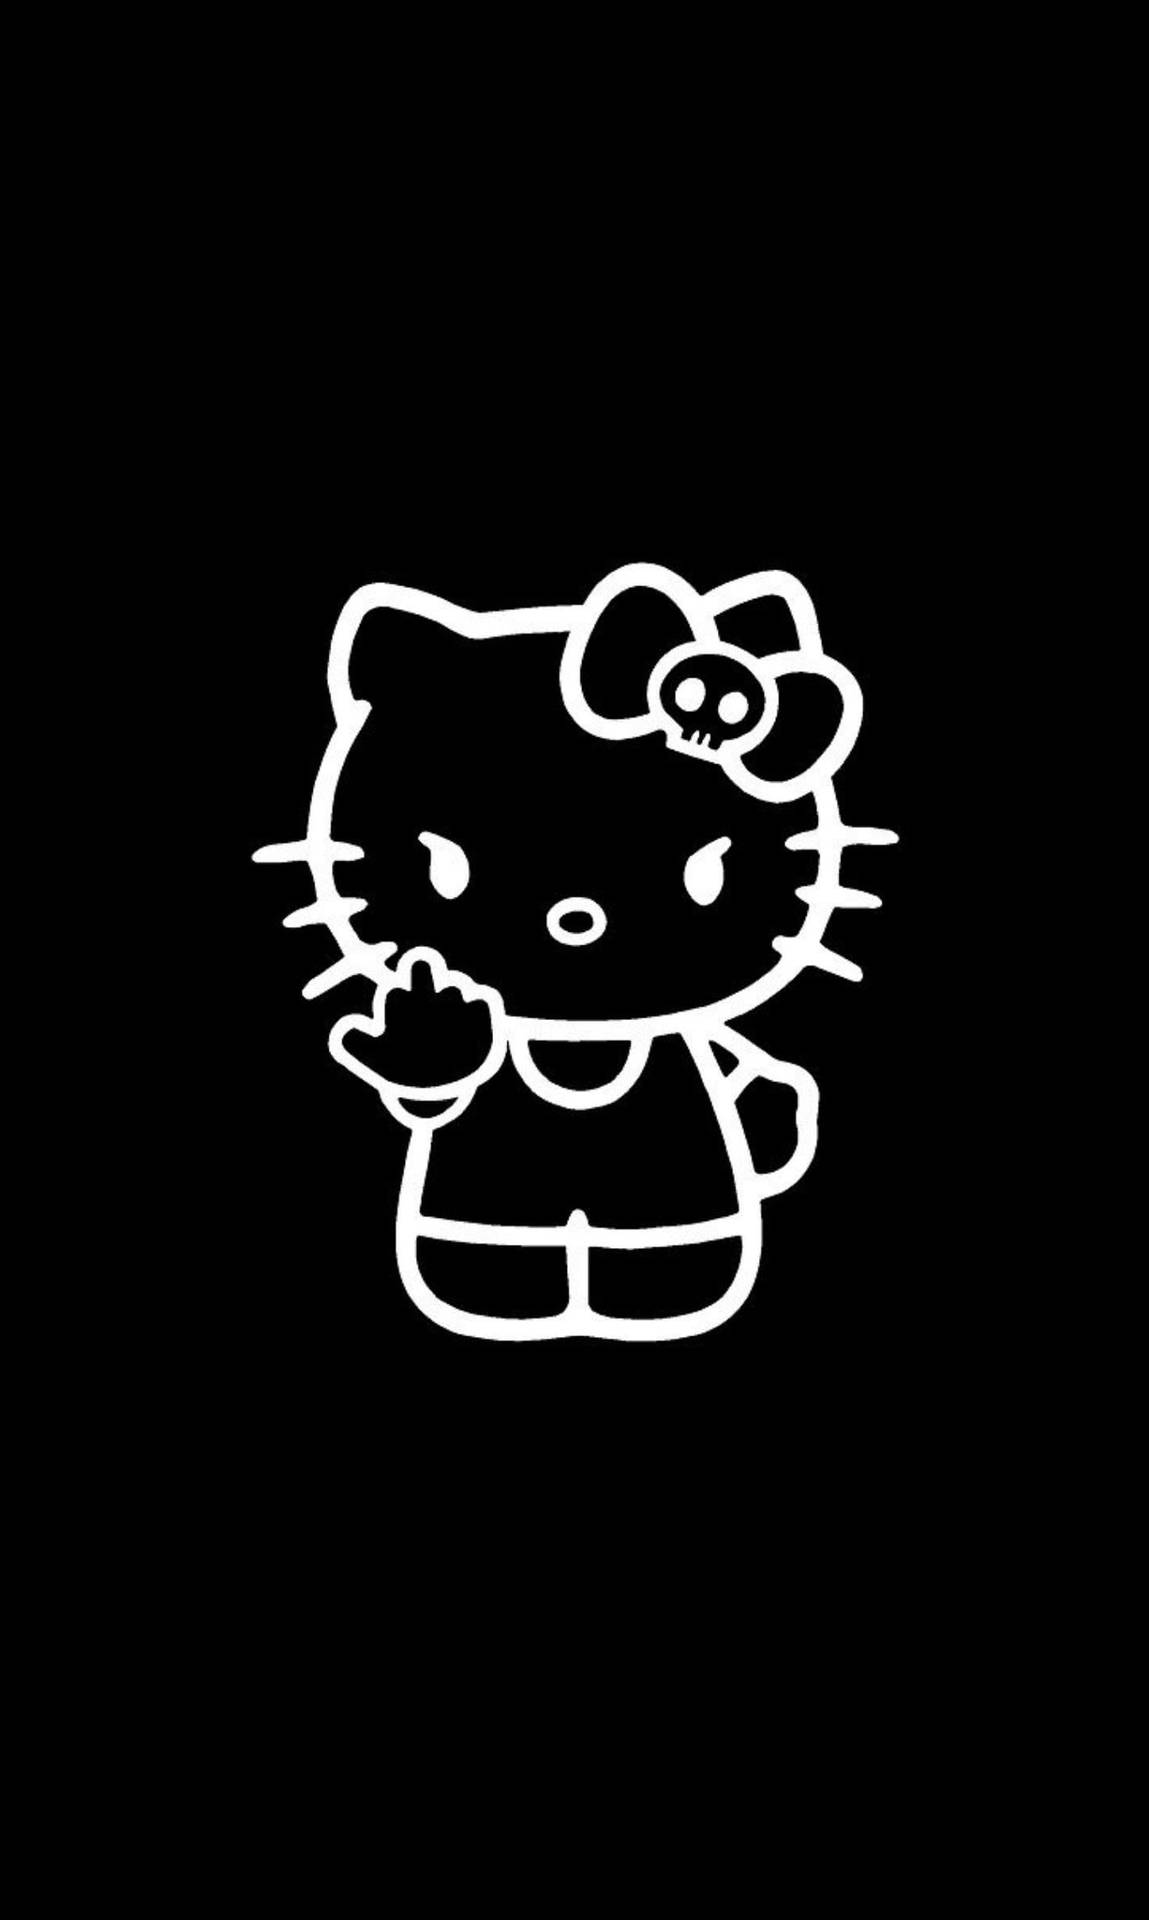 Black Hello Kitty Obscene Gesture